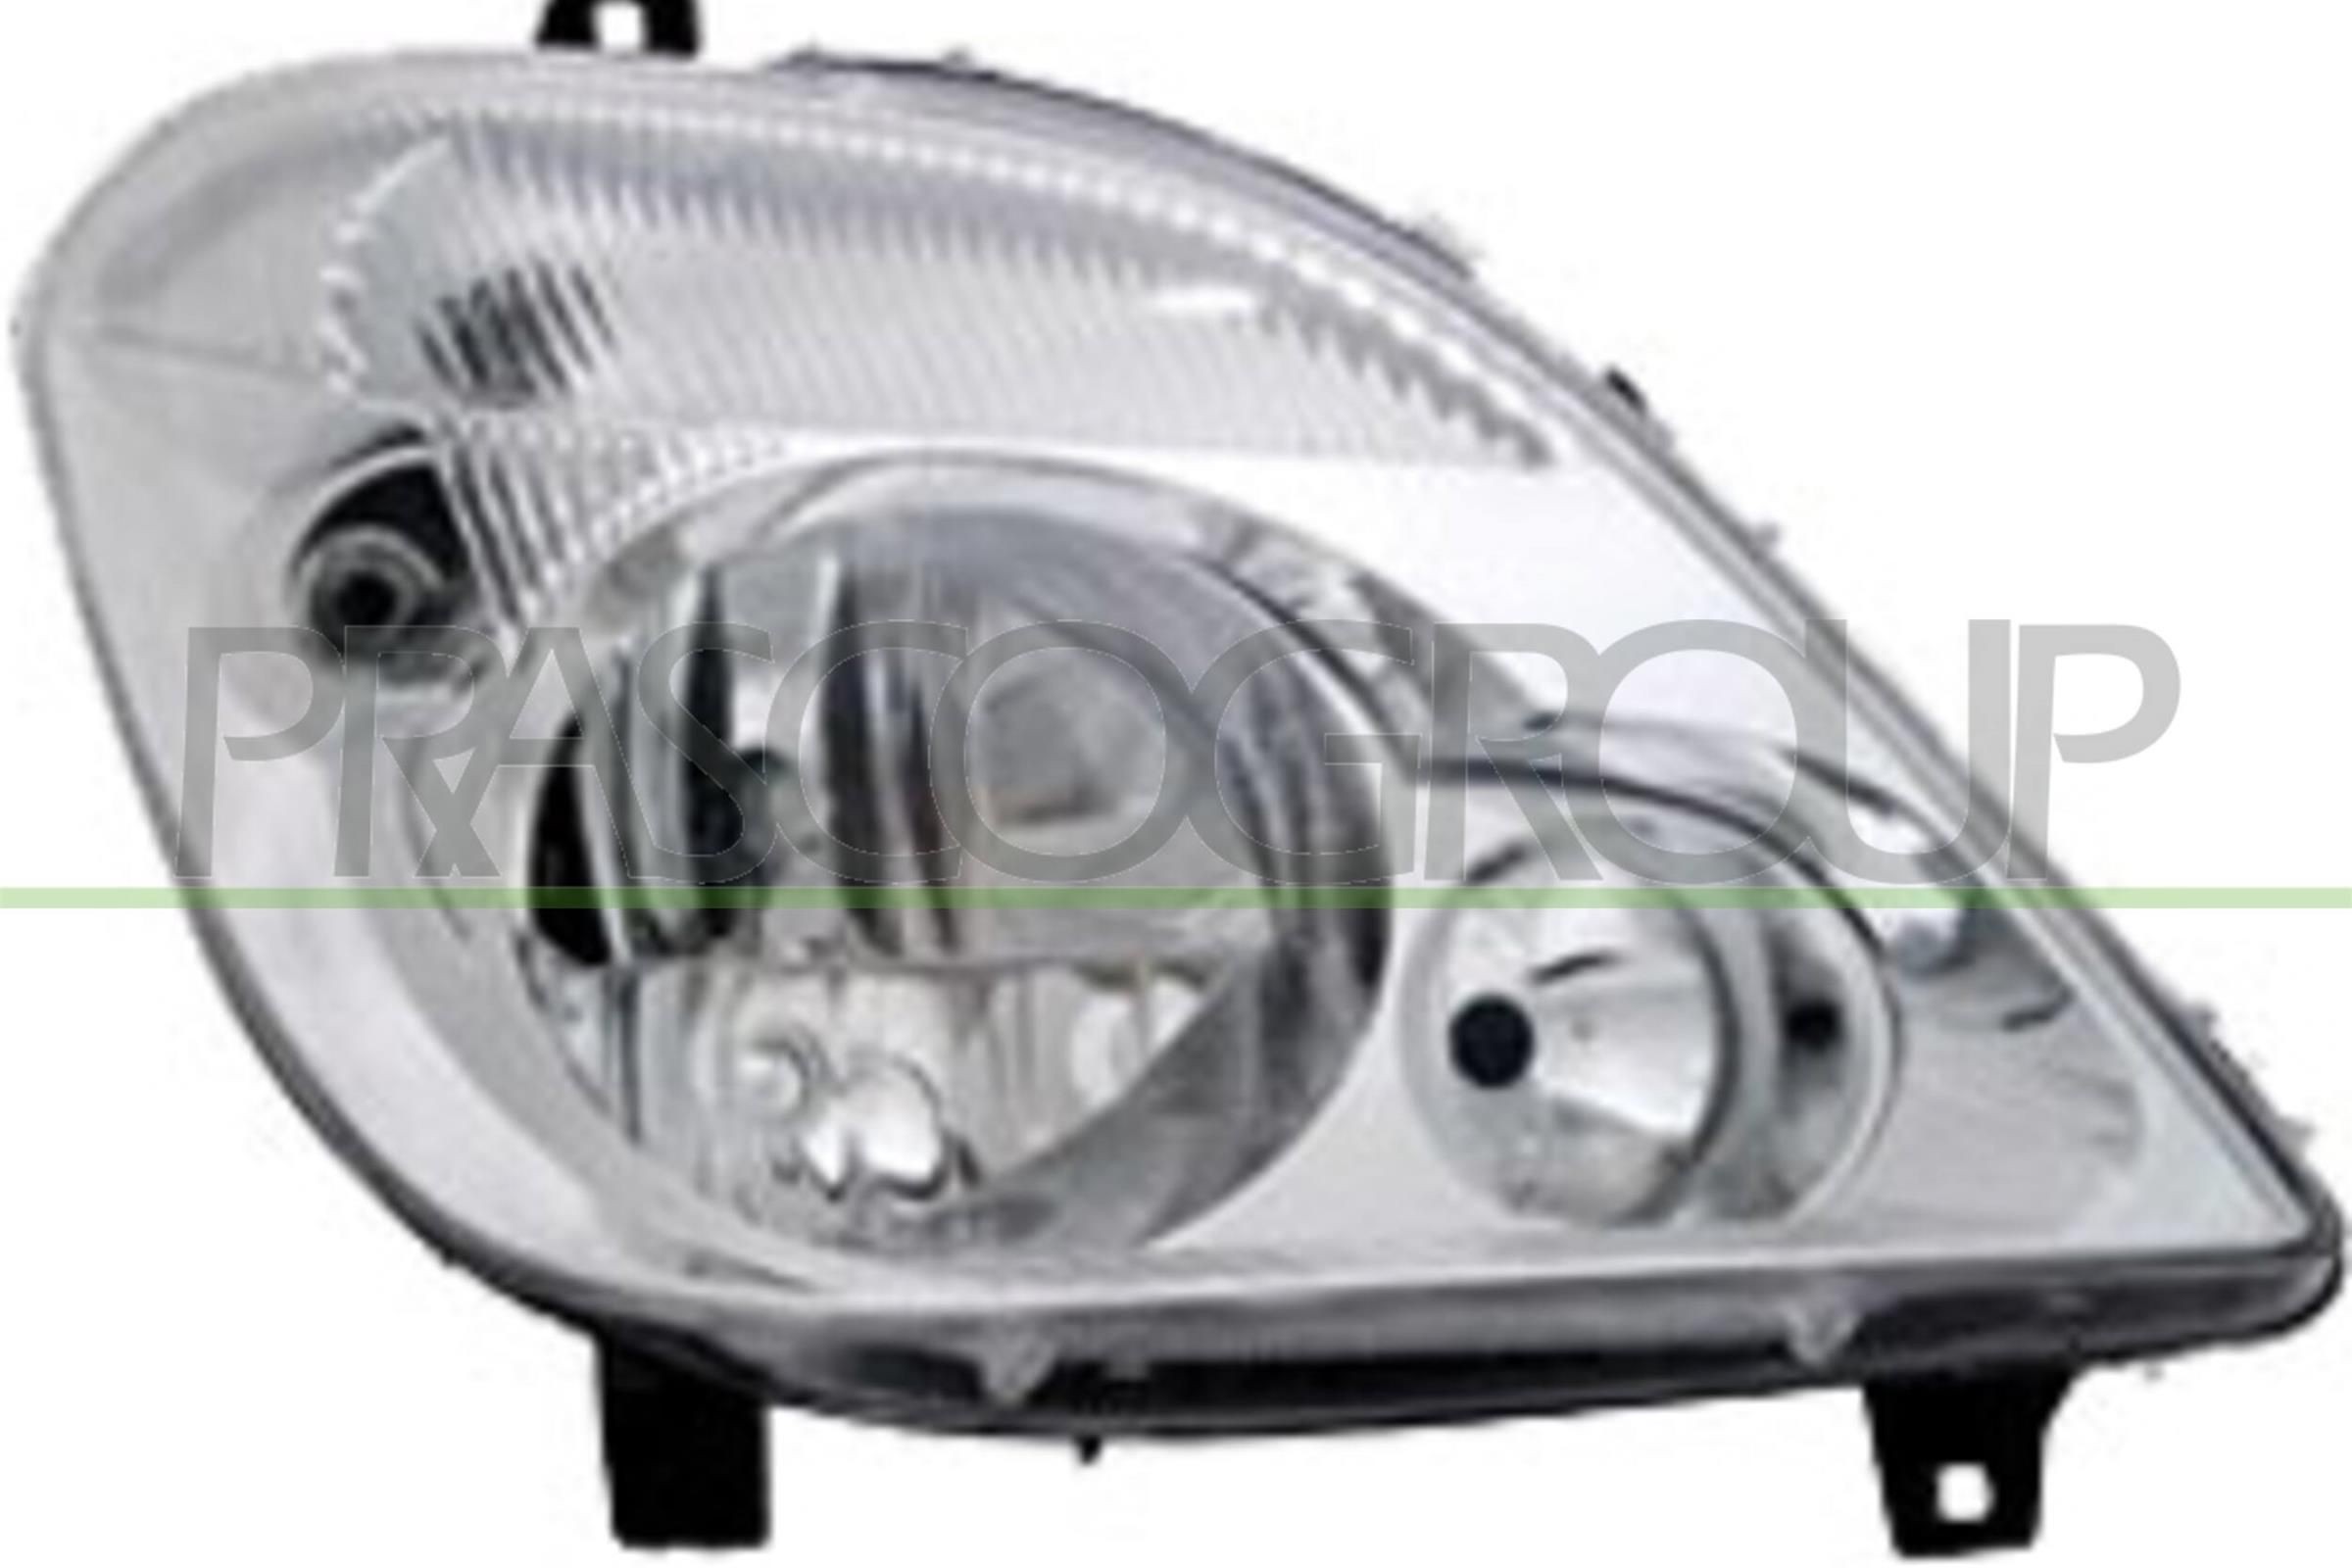 Great value for money - PRASCO Headlight ME9194913